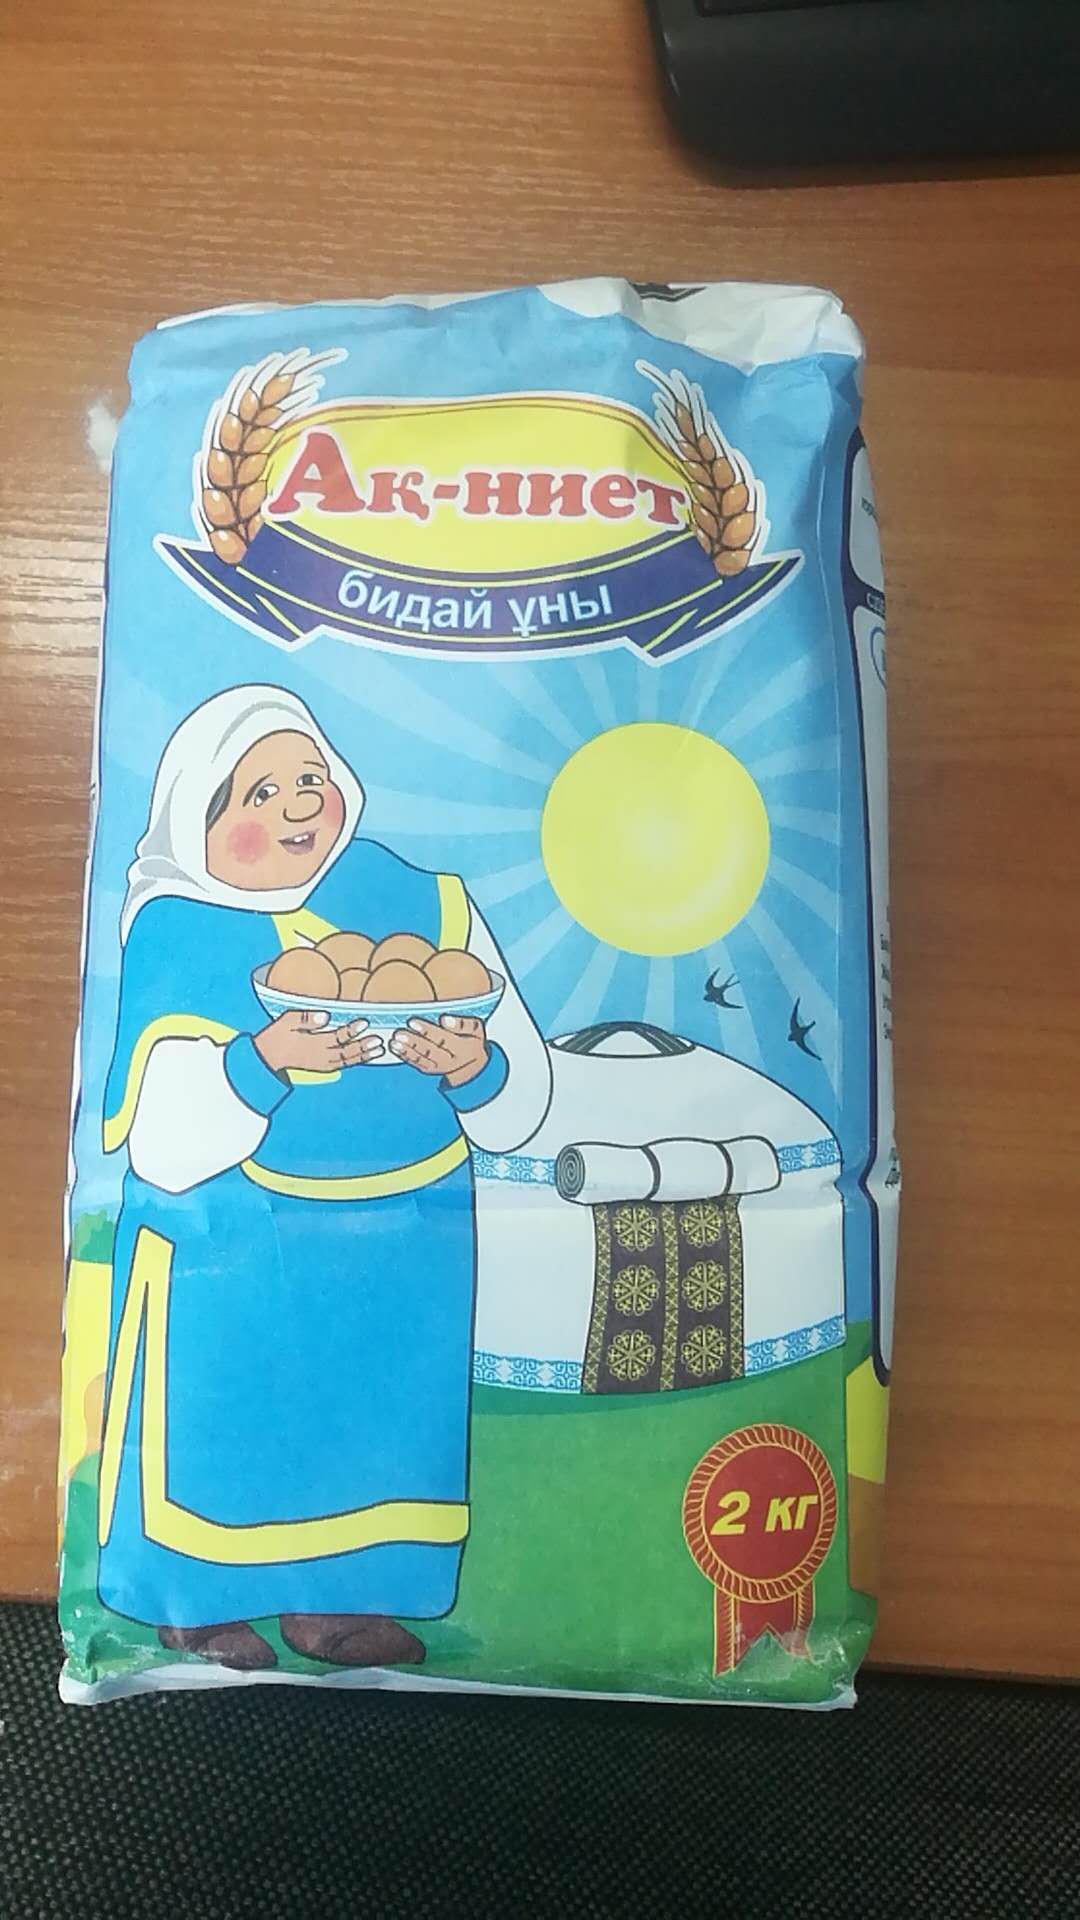 哈萨克斯坦进口小麦面粉